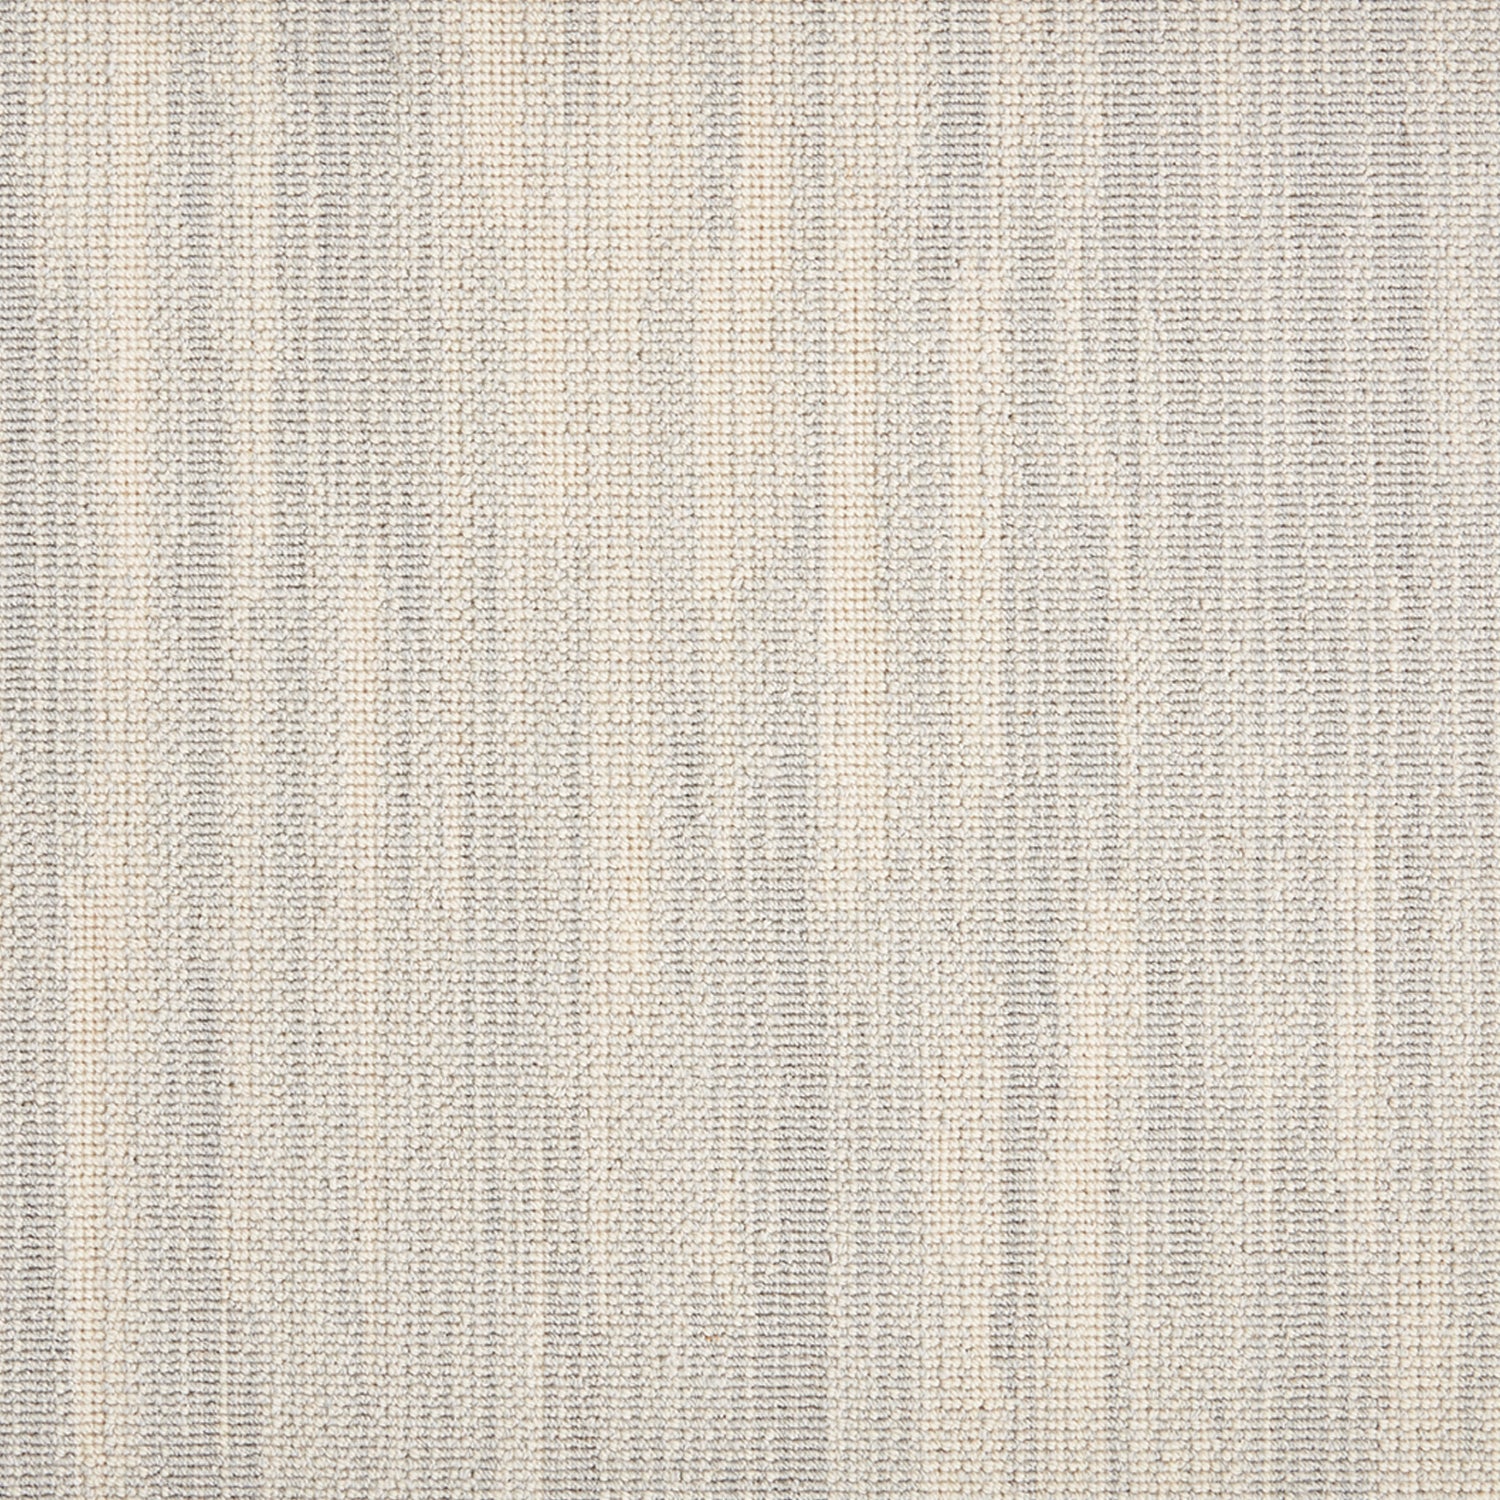 Wool-blend broadloom carpet swatch in a broken stripe pattern in cream and gray.